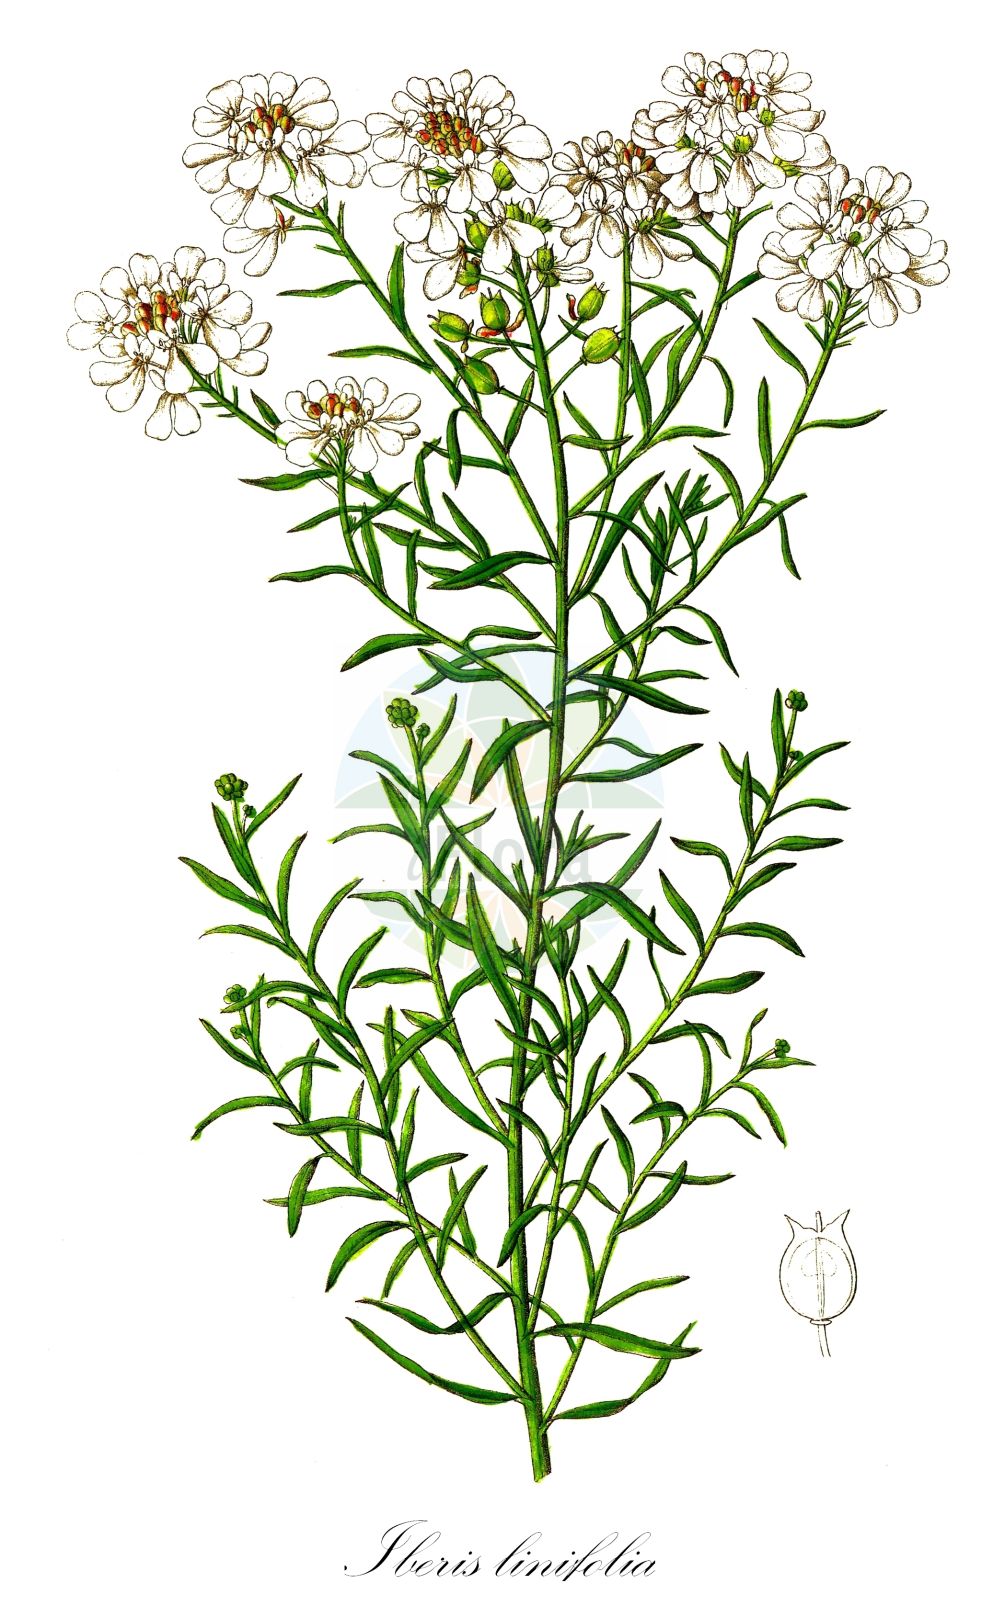 Historische Abbildung von Iberis linifolia (Schleifenblume - Annual Candytuft). Das Bild zeigt Blatt, Bluete, Frucht und Same. ---- Historical Drawing of Iberis linifolia (Schleifenblume - Annual Candytuft). The image is showing leaf, flower, fruit and seed.(Iberis linifolia,Schleifenblume,Annual Candytuft,Biauricula dunalii,Iberis boppardensis,Iberis ciliata,Iberis dunalii,Iberis intermedia,Iberis linifolia,Iberis prostii,Iberis timeroyi,Schleifenblume,Bopparder Schleifenblume,Leinblaettrige Schleifenblume,Mittlere Schleifenblume,Annual Candytuft,Wild Candytuft,Iberis,Schleifenblume,Candytuft,Brassicaceae,Kreuzblütler,Cabbage family,Blatt,Bluete,Frucht,Same,leaf,flower,fruit,seed,Dietrich (1833-1844))